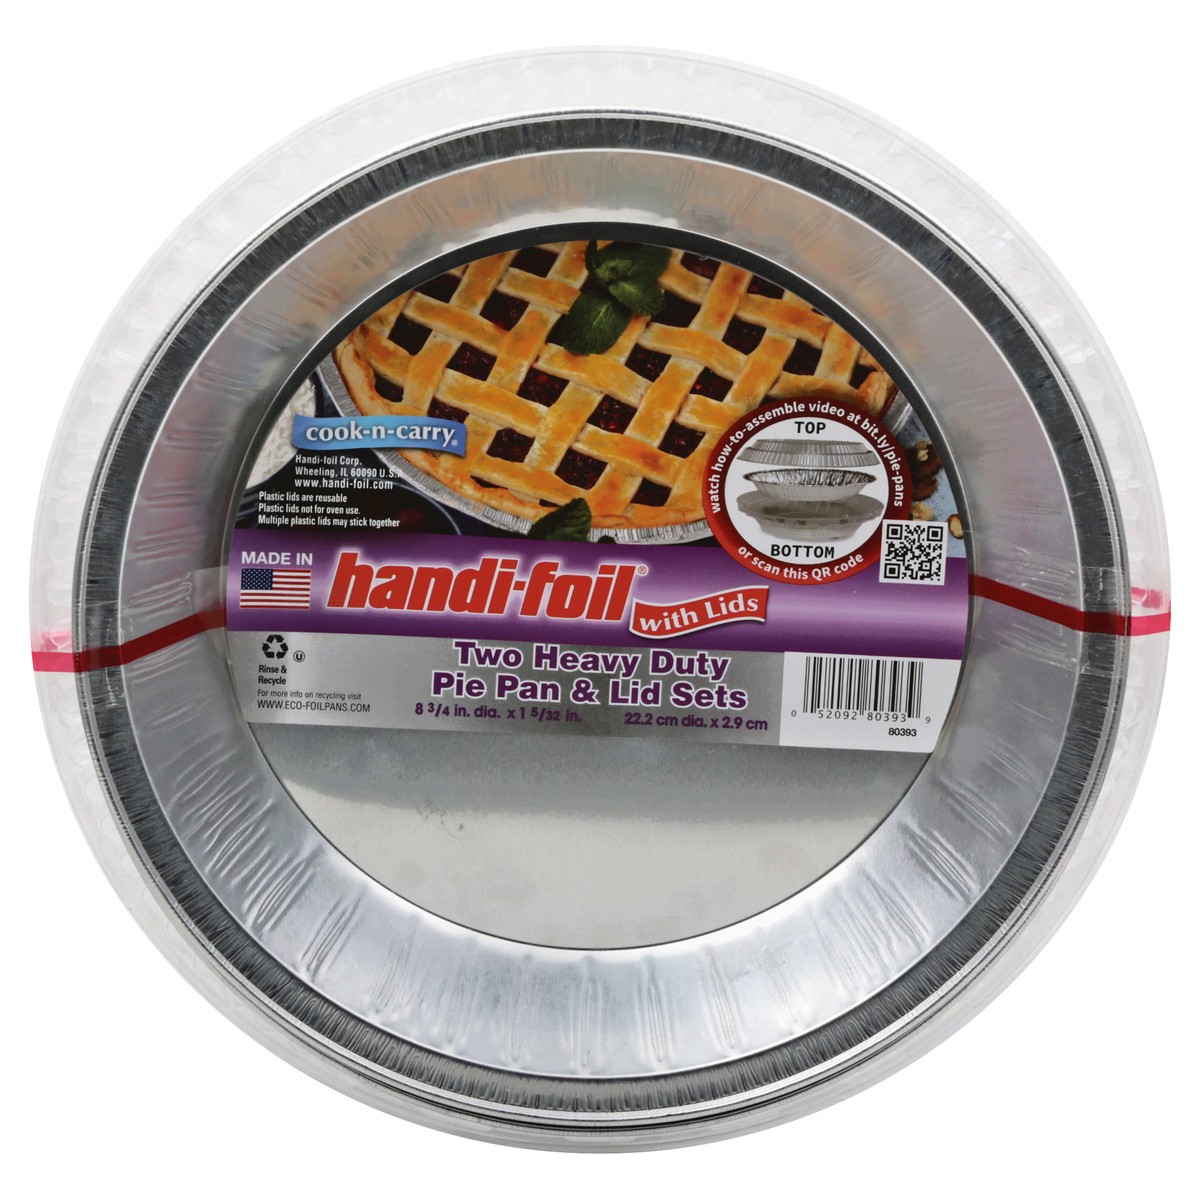 slide 1 of 9, Handi-foil Heavy Duty Pie Pan Lid Sets, 2 ct